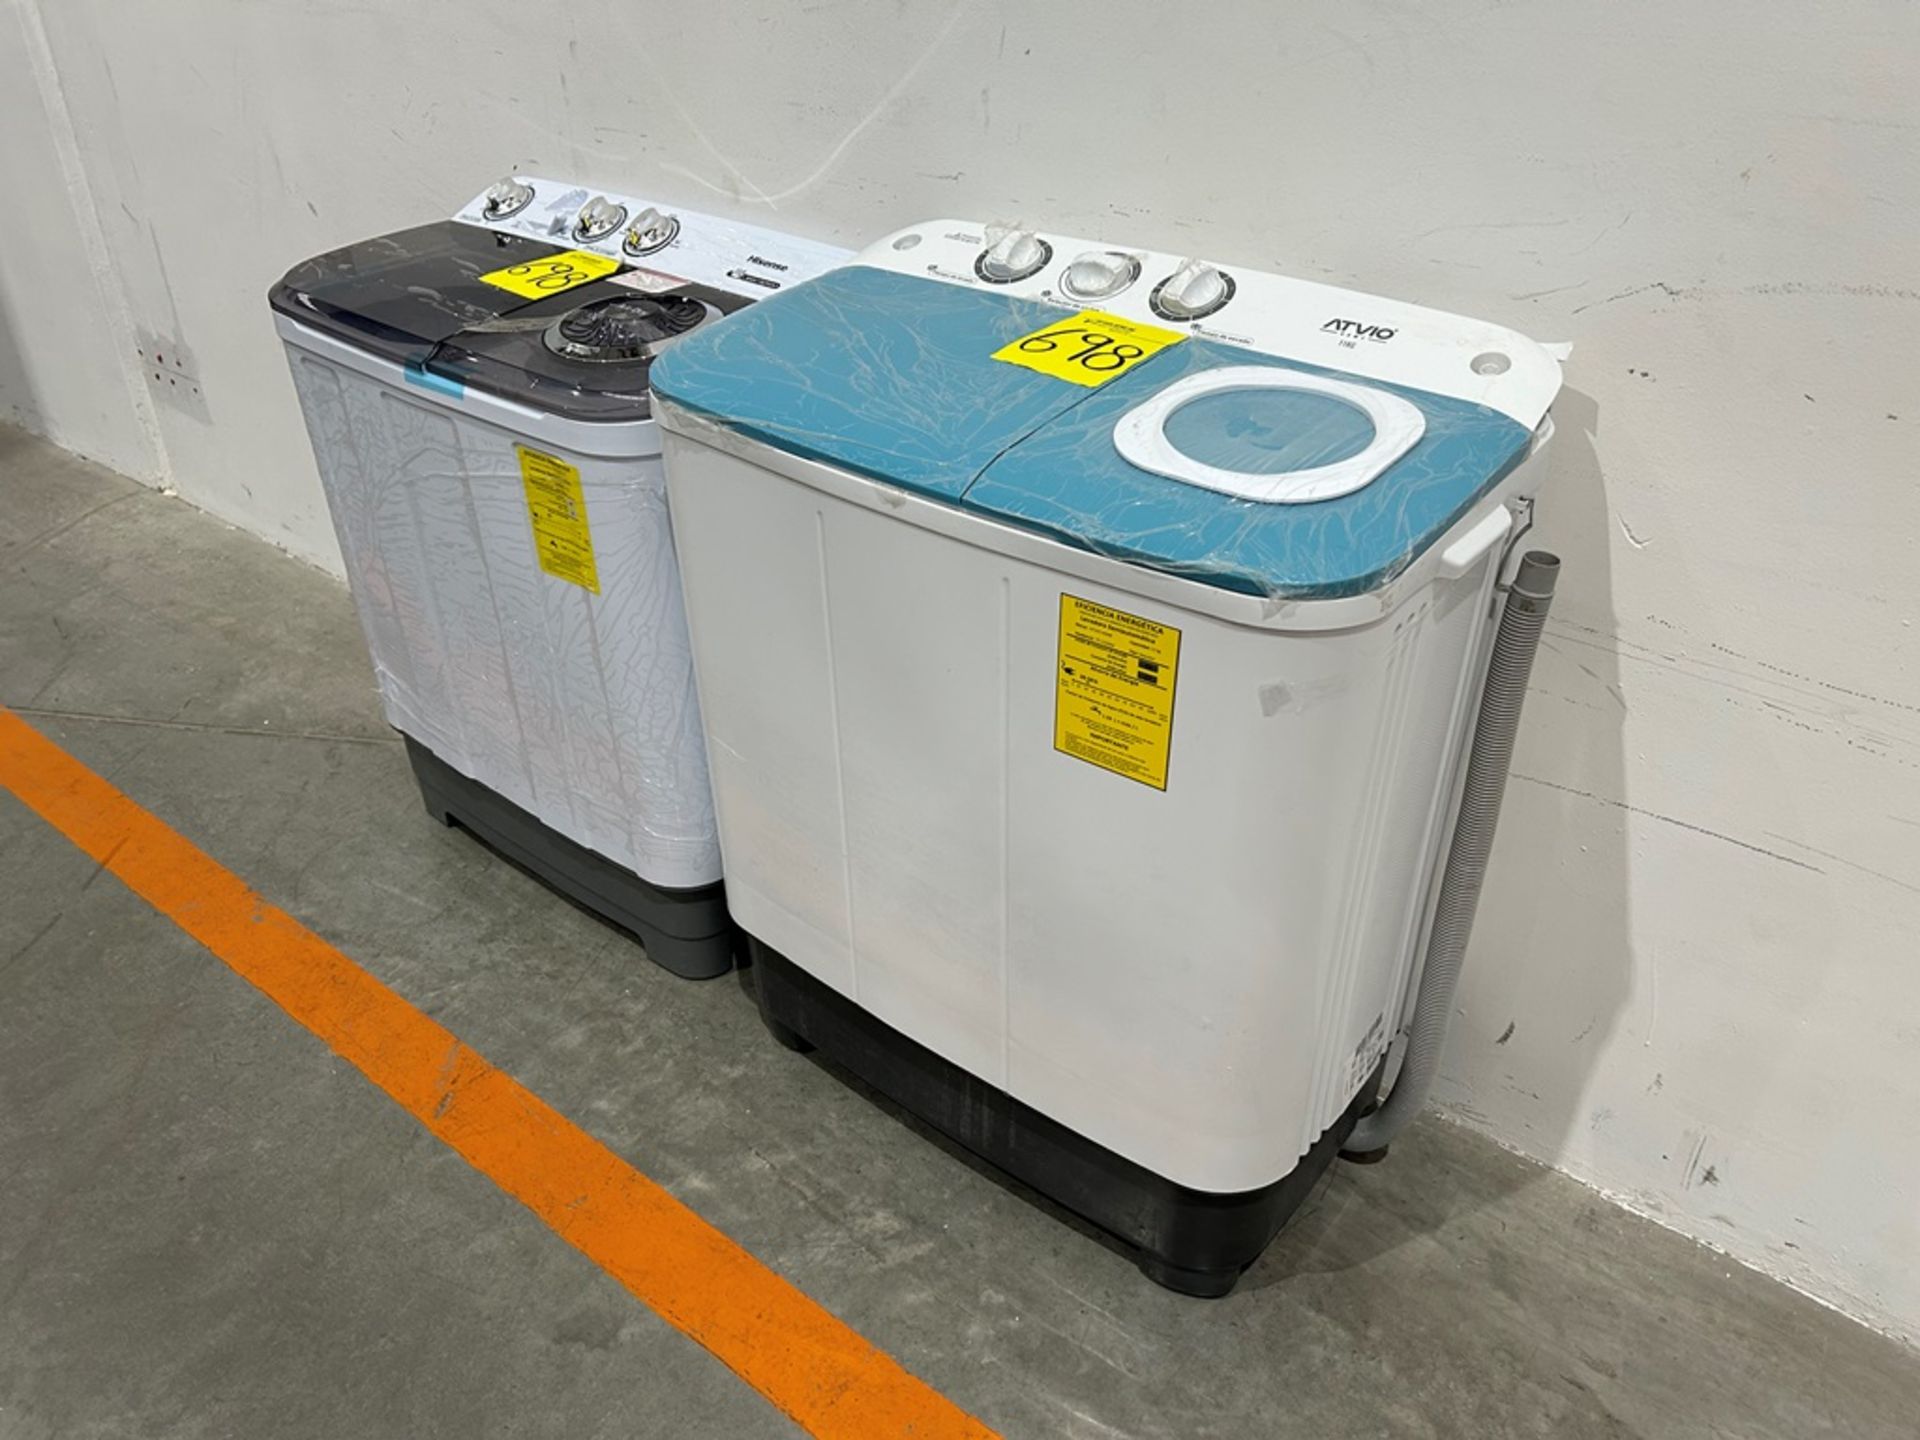 Lote de 2 lavadoras contiene: 1 Lavadora de 11 KG, Marca ATVIO, Modelo K9357701, Serie 500057, Colo - Image 2 of 10